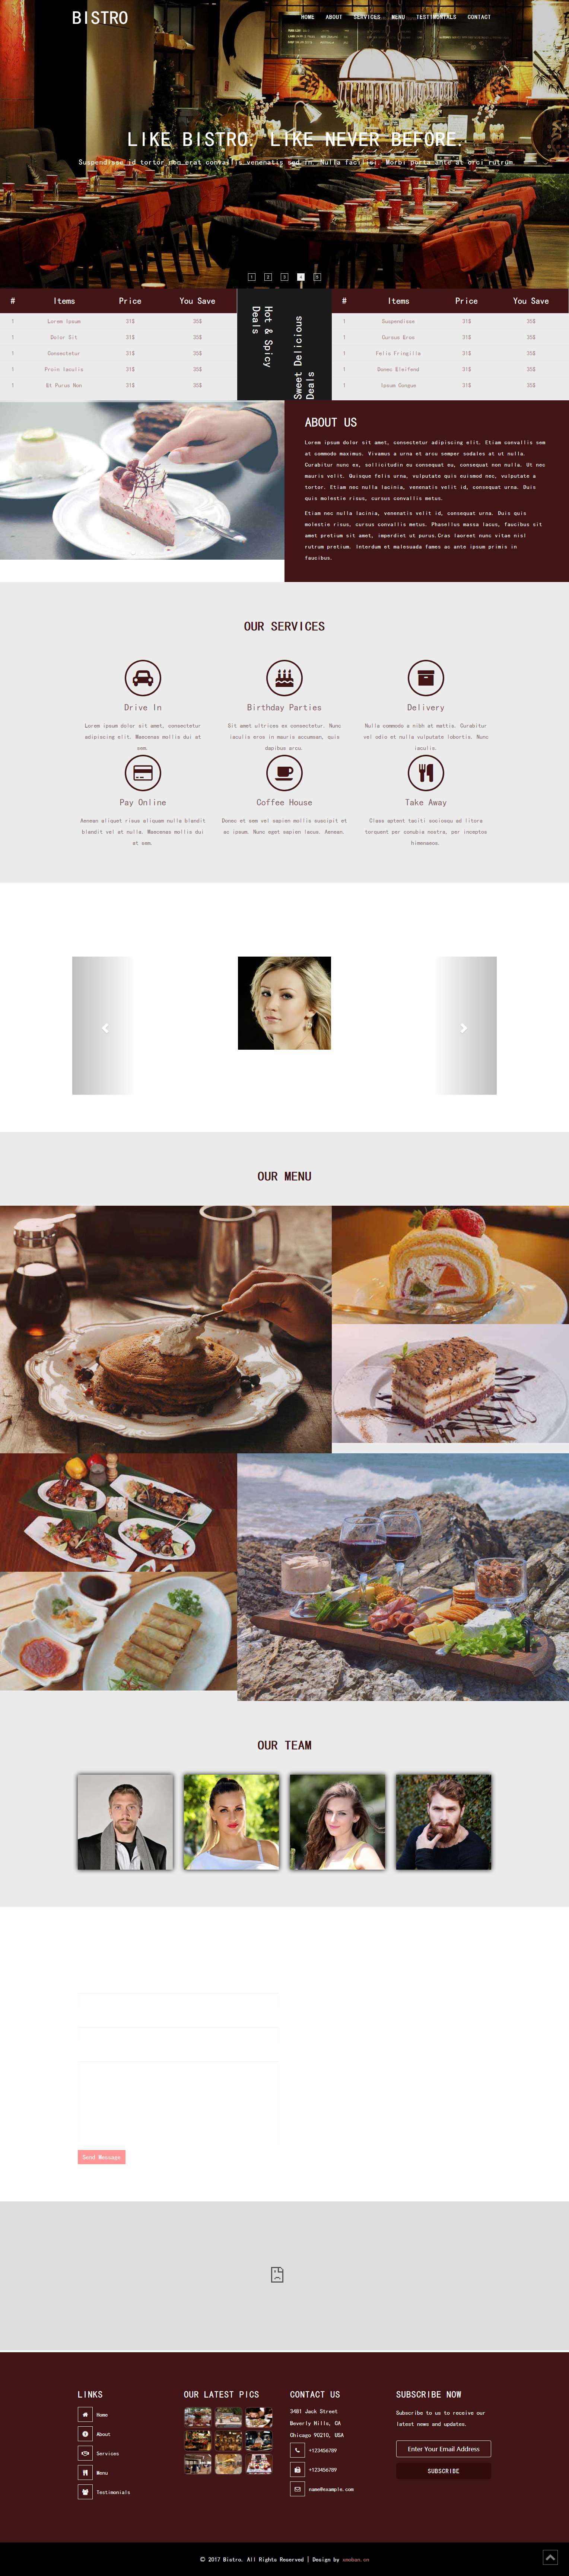 白色欧美风格的酒馆餐馆企业网站源码下载